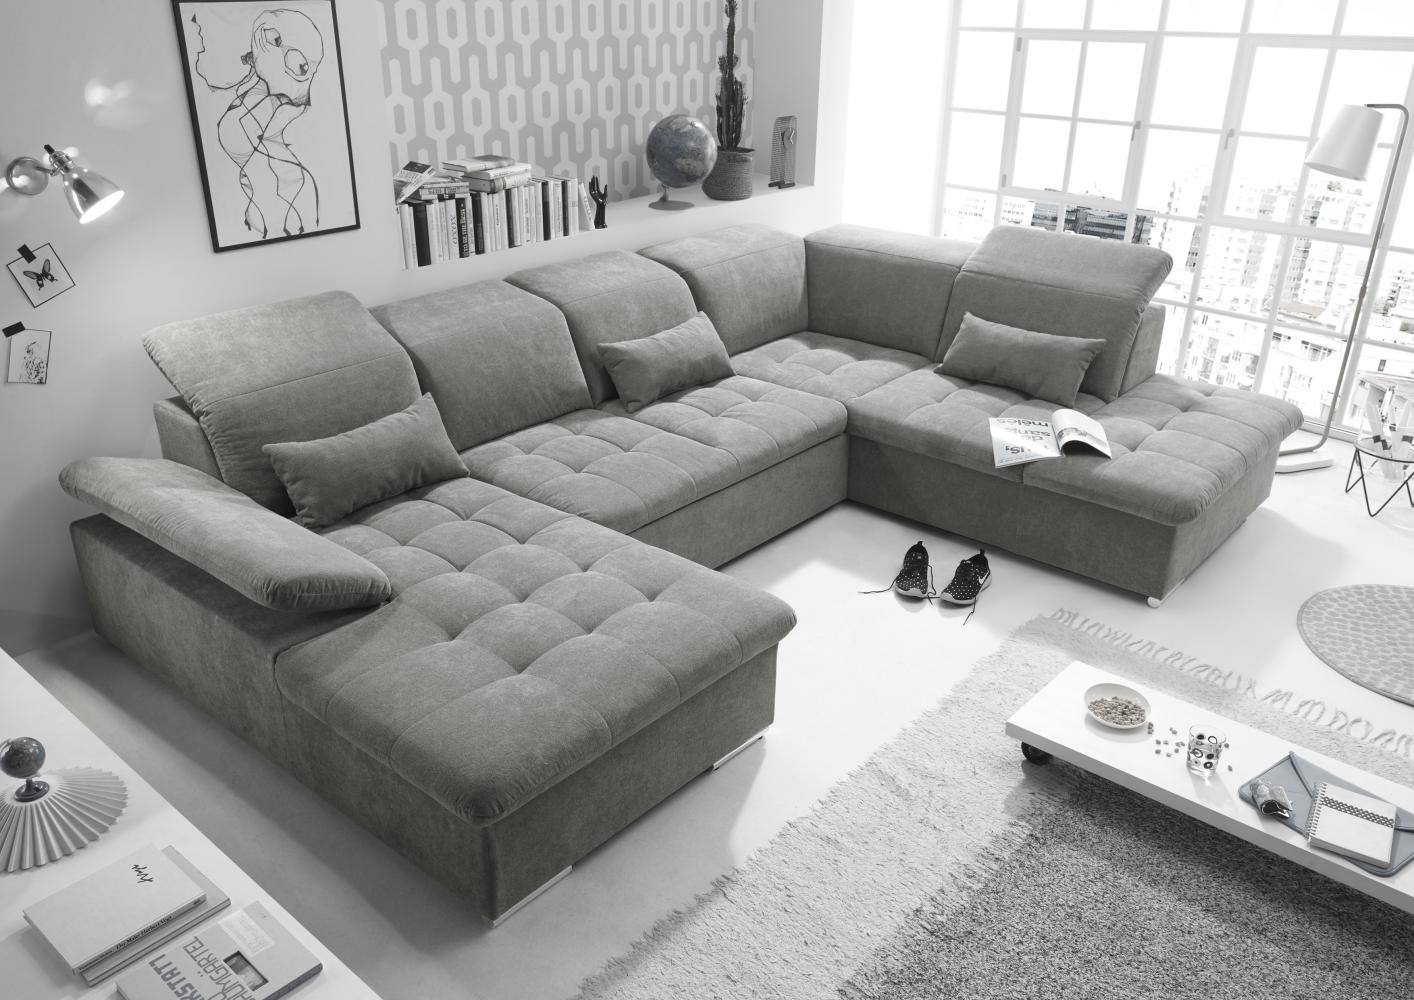 Couch WAYNE R Sofa Schlafcouch Wohnlandschaft Schlaffunktion schlamm grau U-Form rechts Bild 1